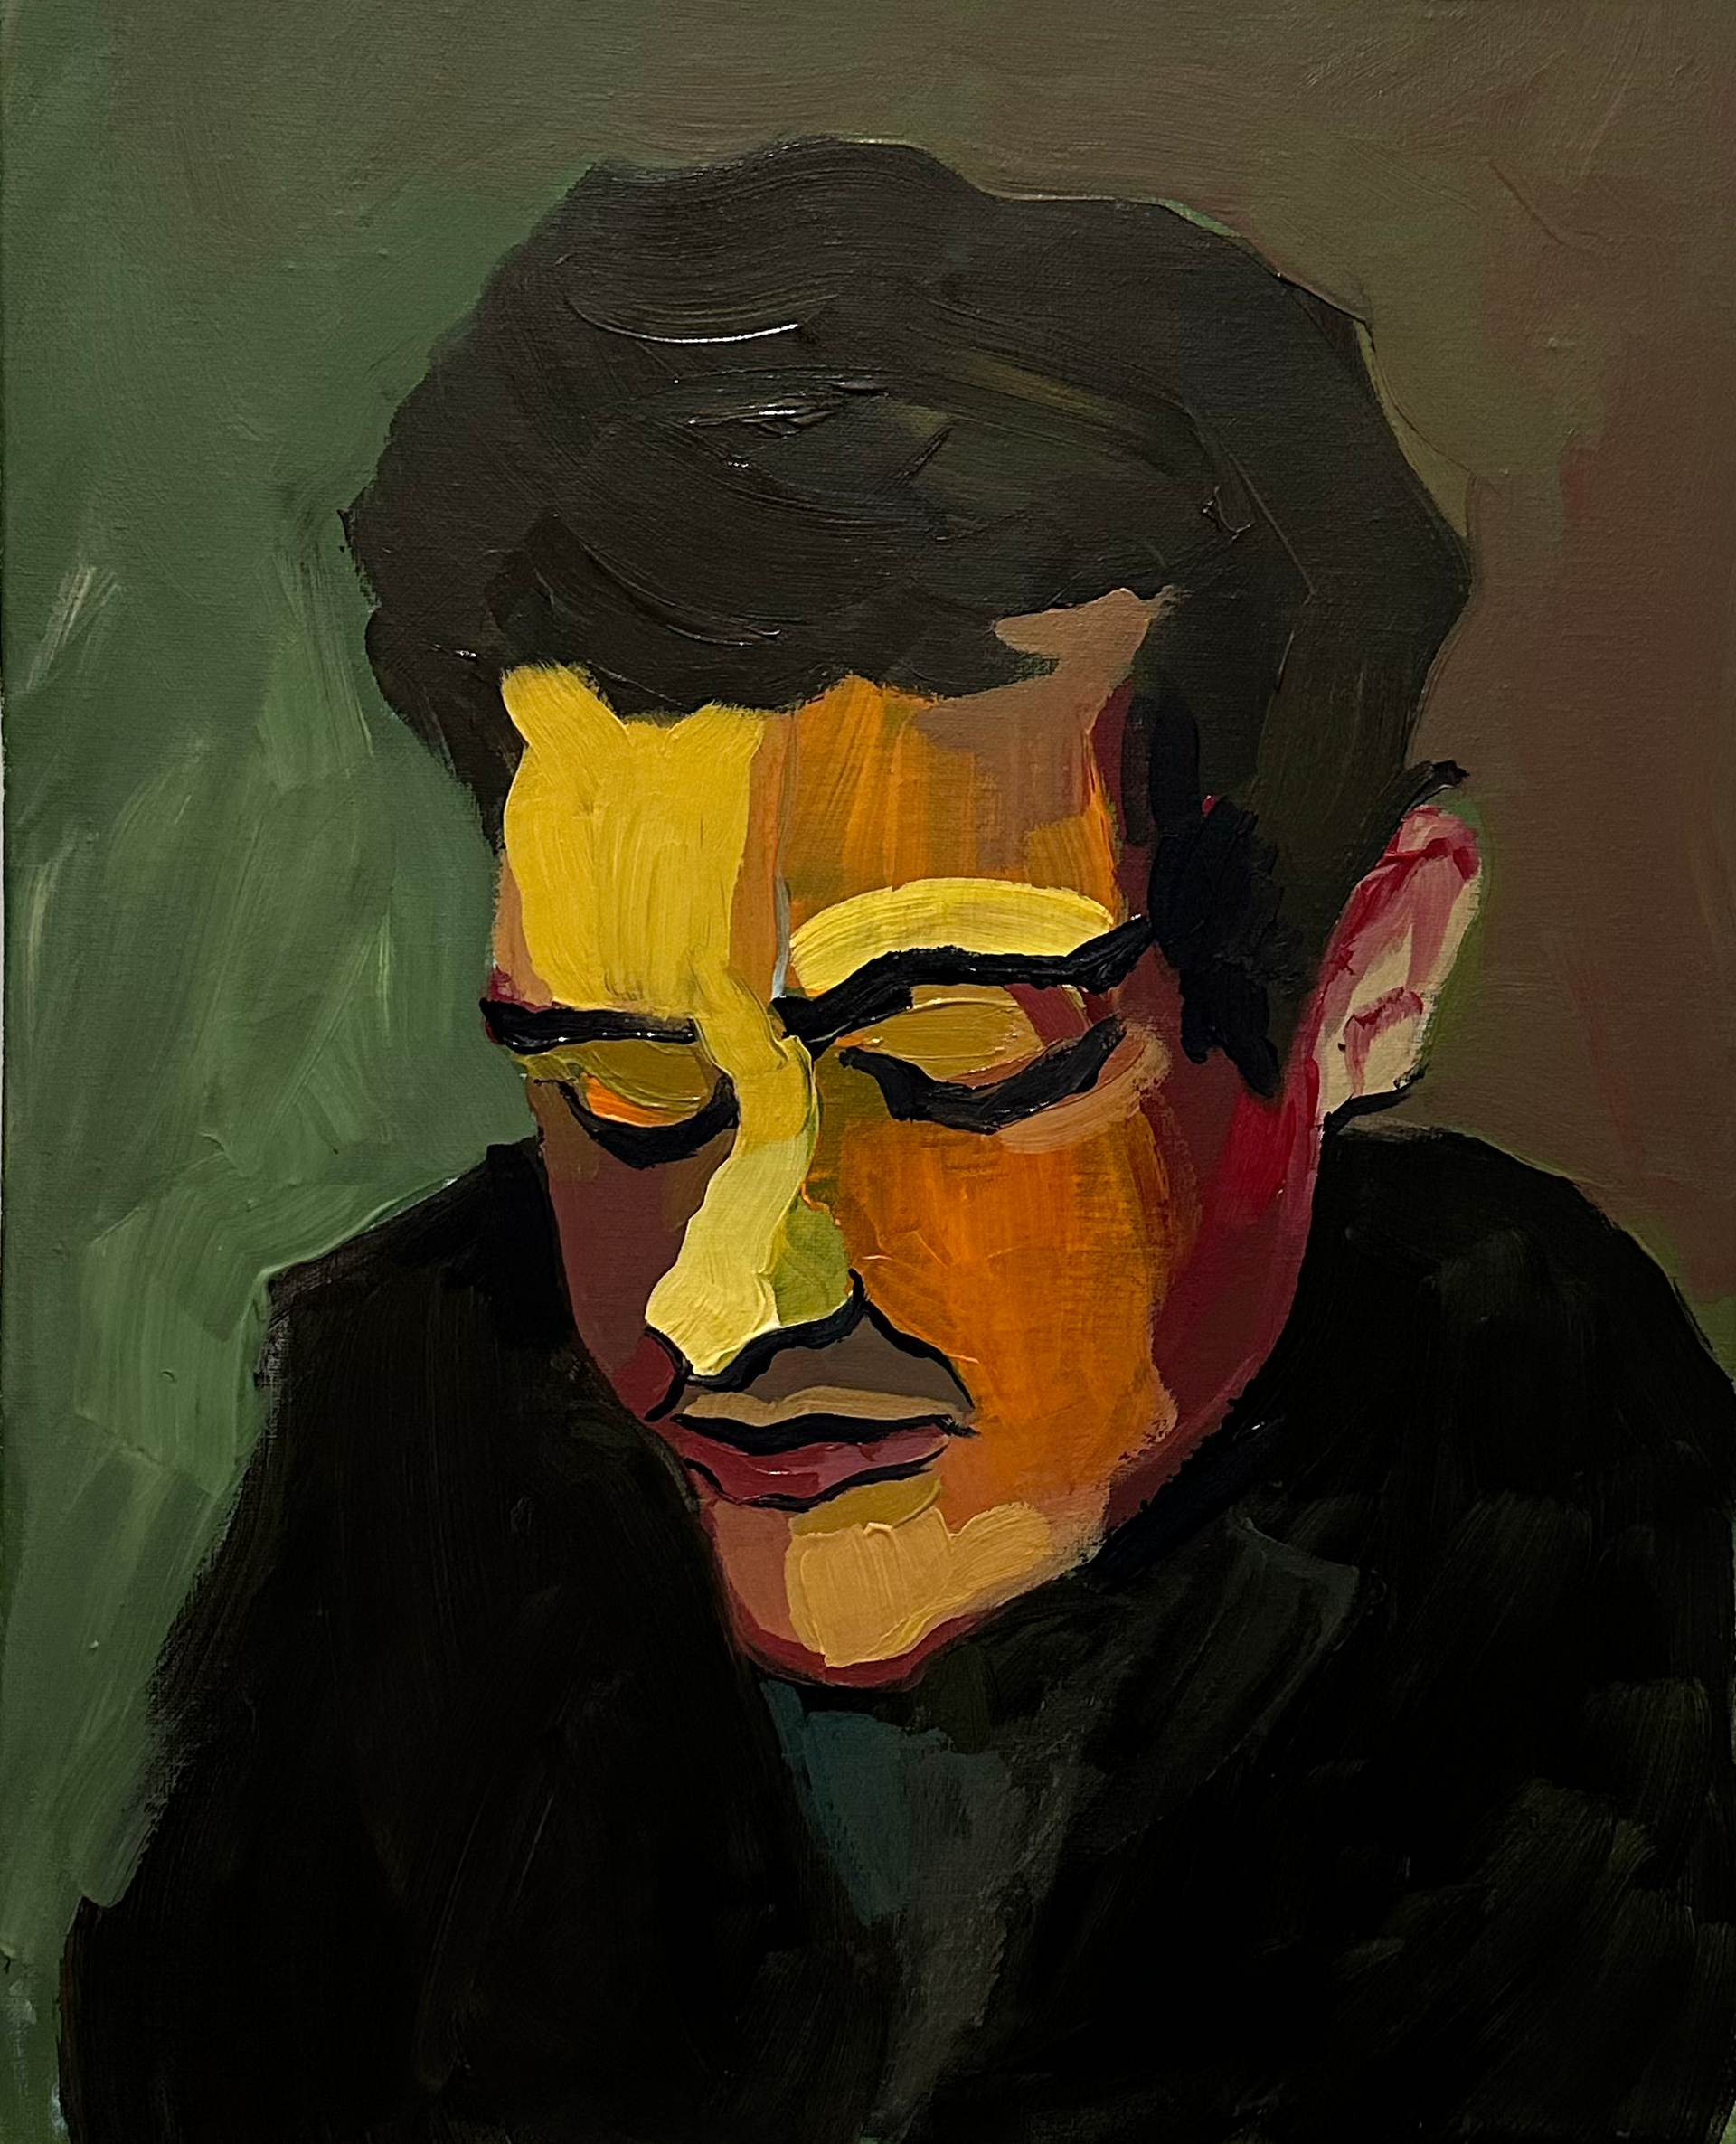 Otoczony chłodną zielenią żółto-oranżowy, ekspresyjny portret ciemnowłosego mężczyzny spoglądającego w dół.